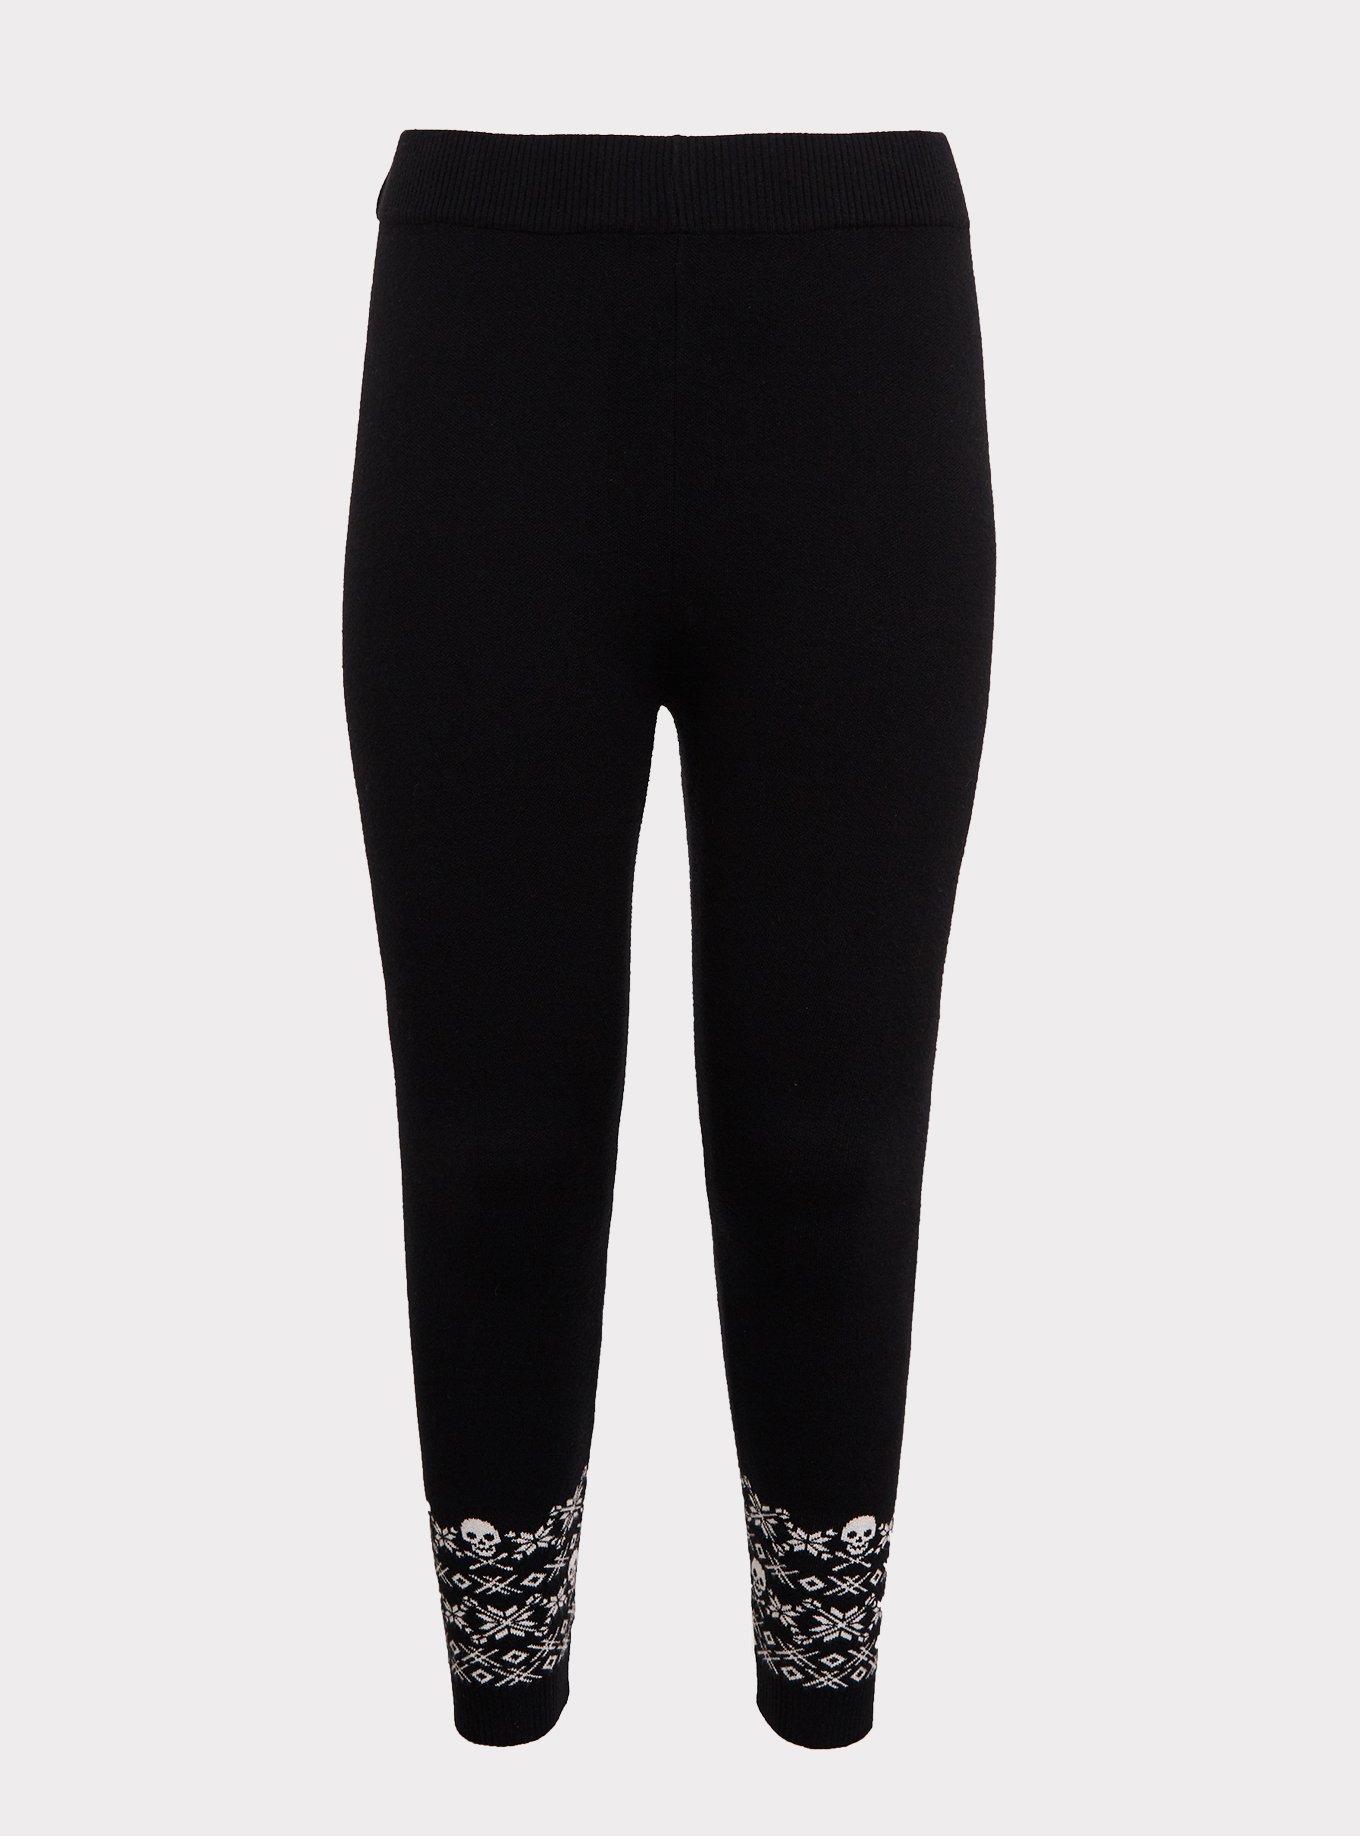 Plus Size - Sweater-Knit Legging – Fair Isle Skull Black & White - Torrid